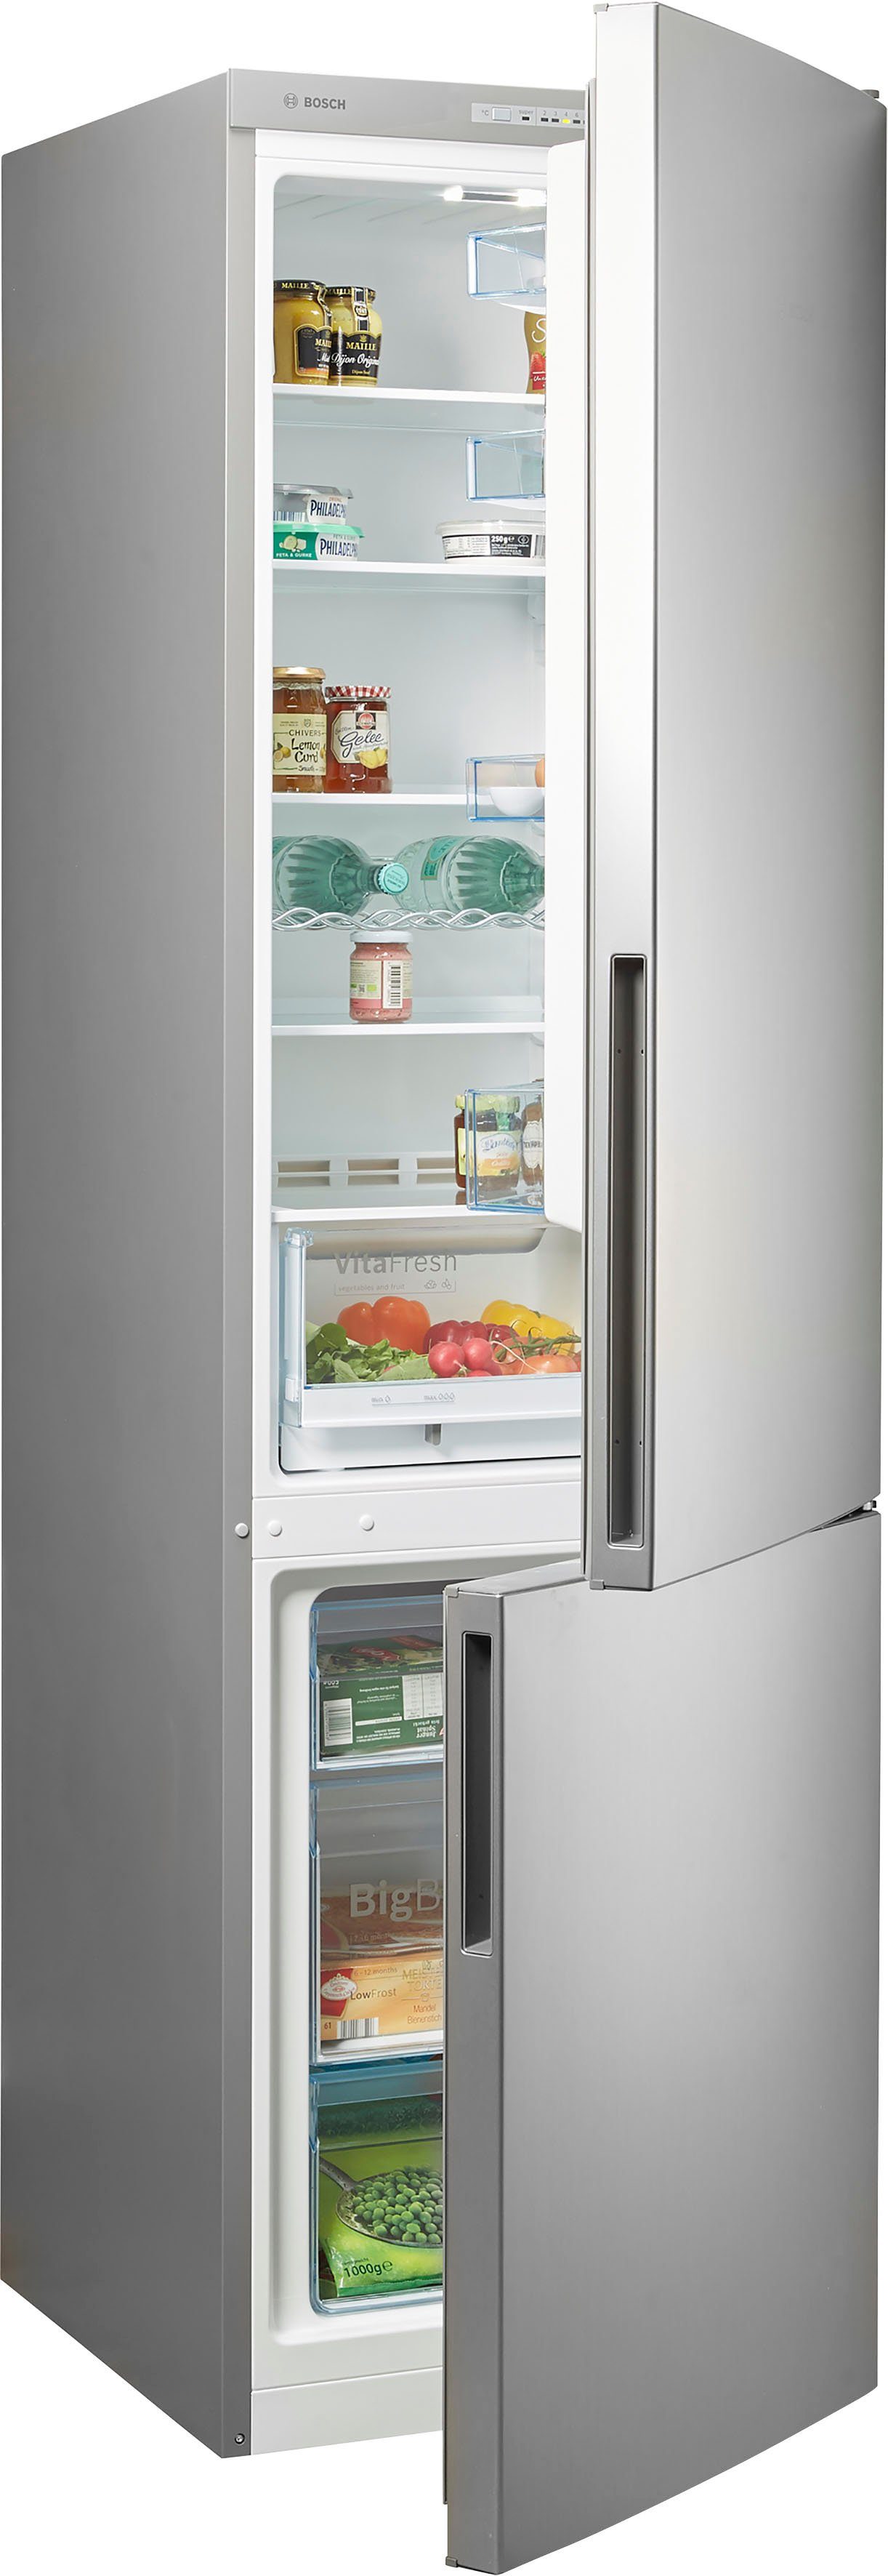 Privileg Kühlschränke online kaufen | OTTO